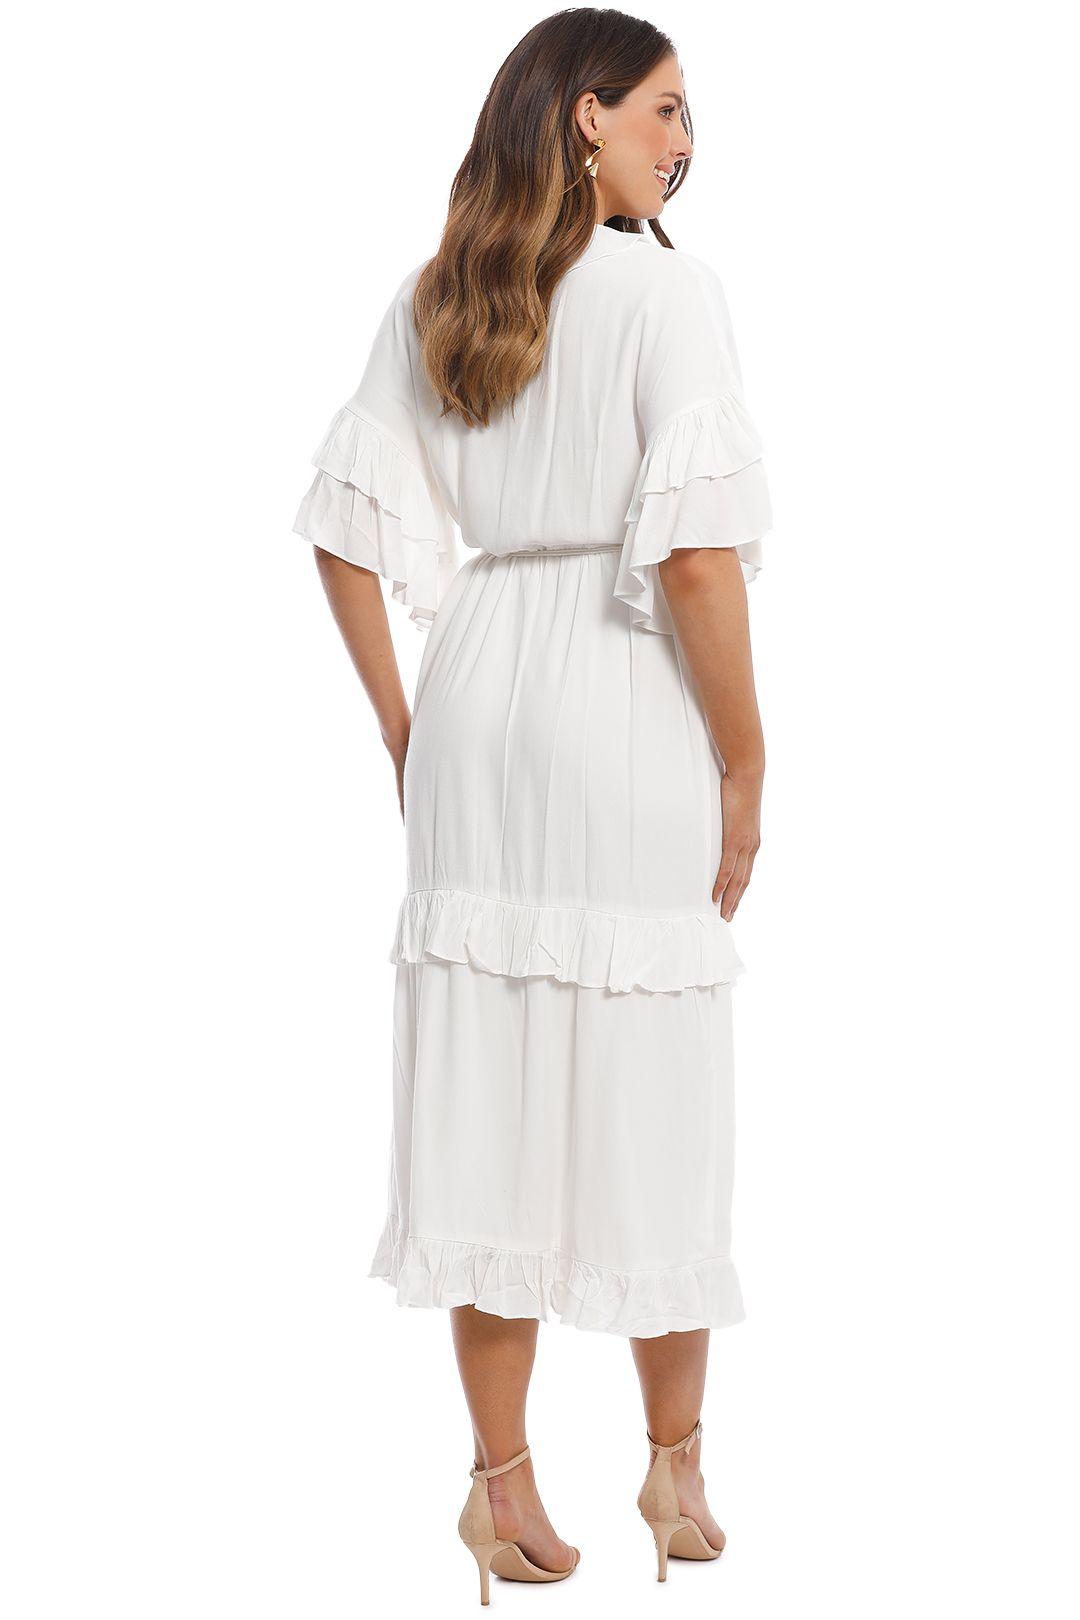 Elliatt - Vino Dress - White - Side